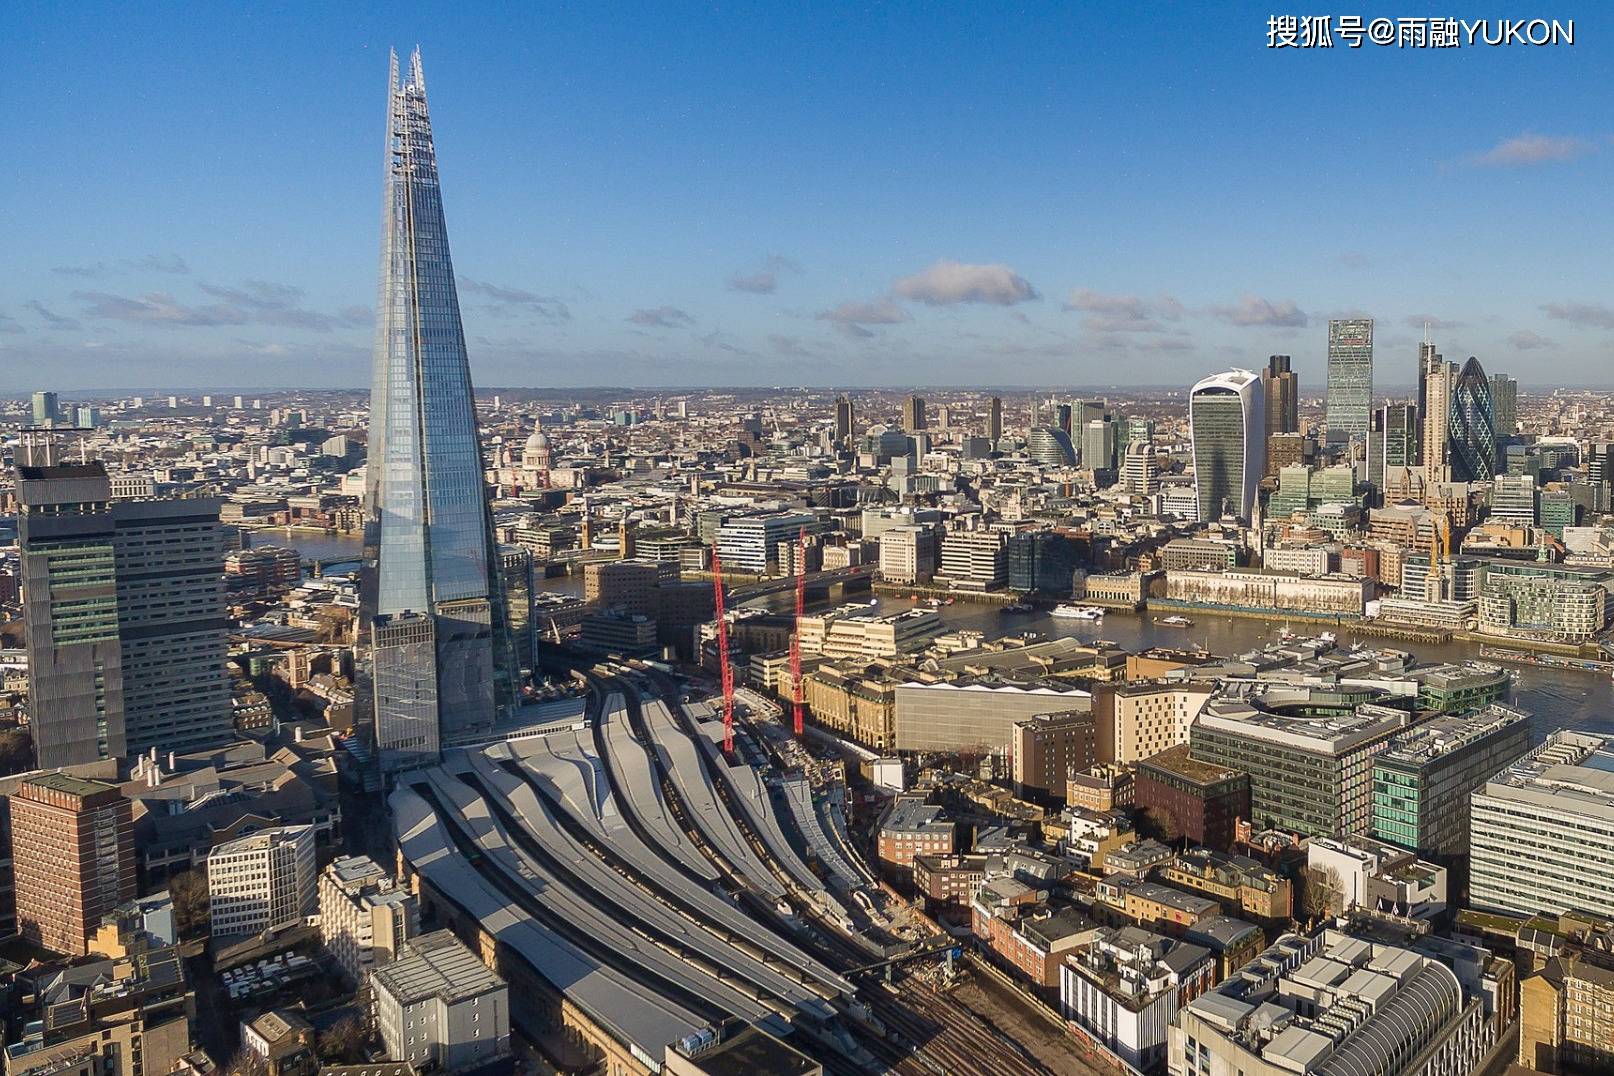 原创英国第一高楼:309.6米高耗资超40亿,95%却被一个中东小国所拥有